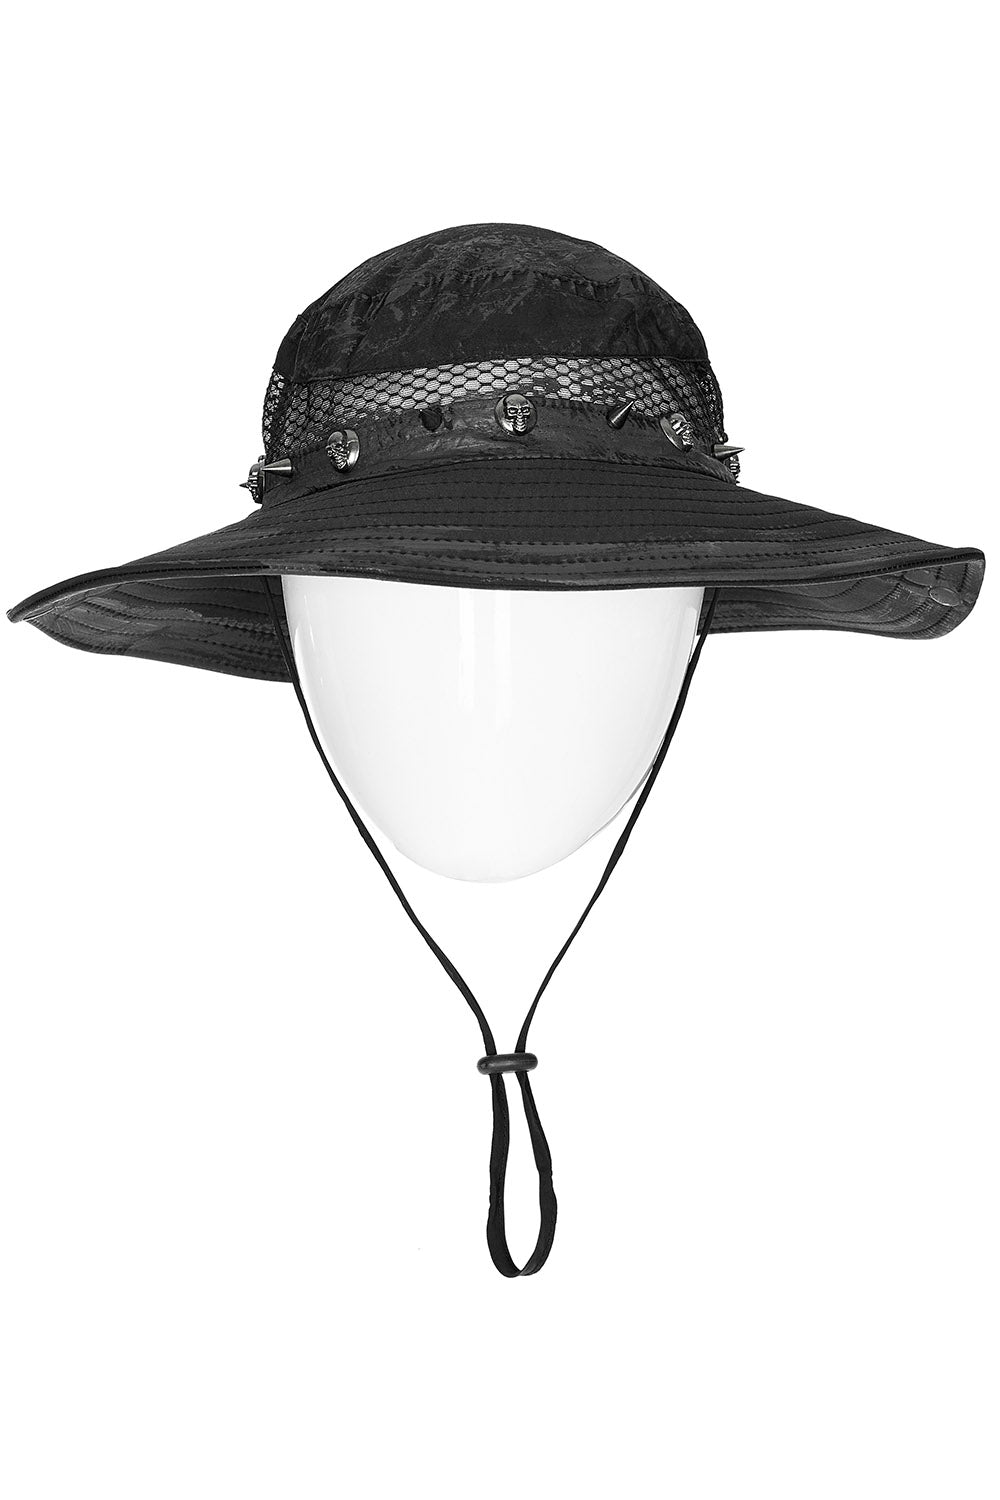 Scavenger Studded Outback Hat